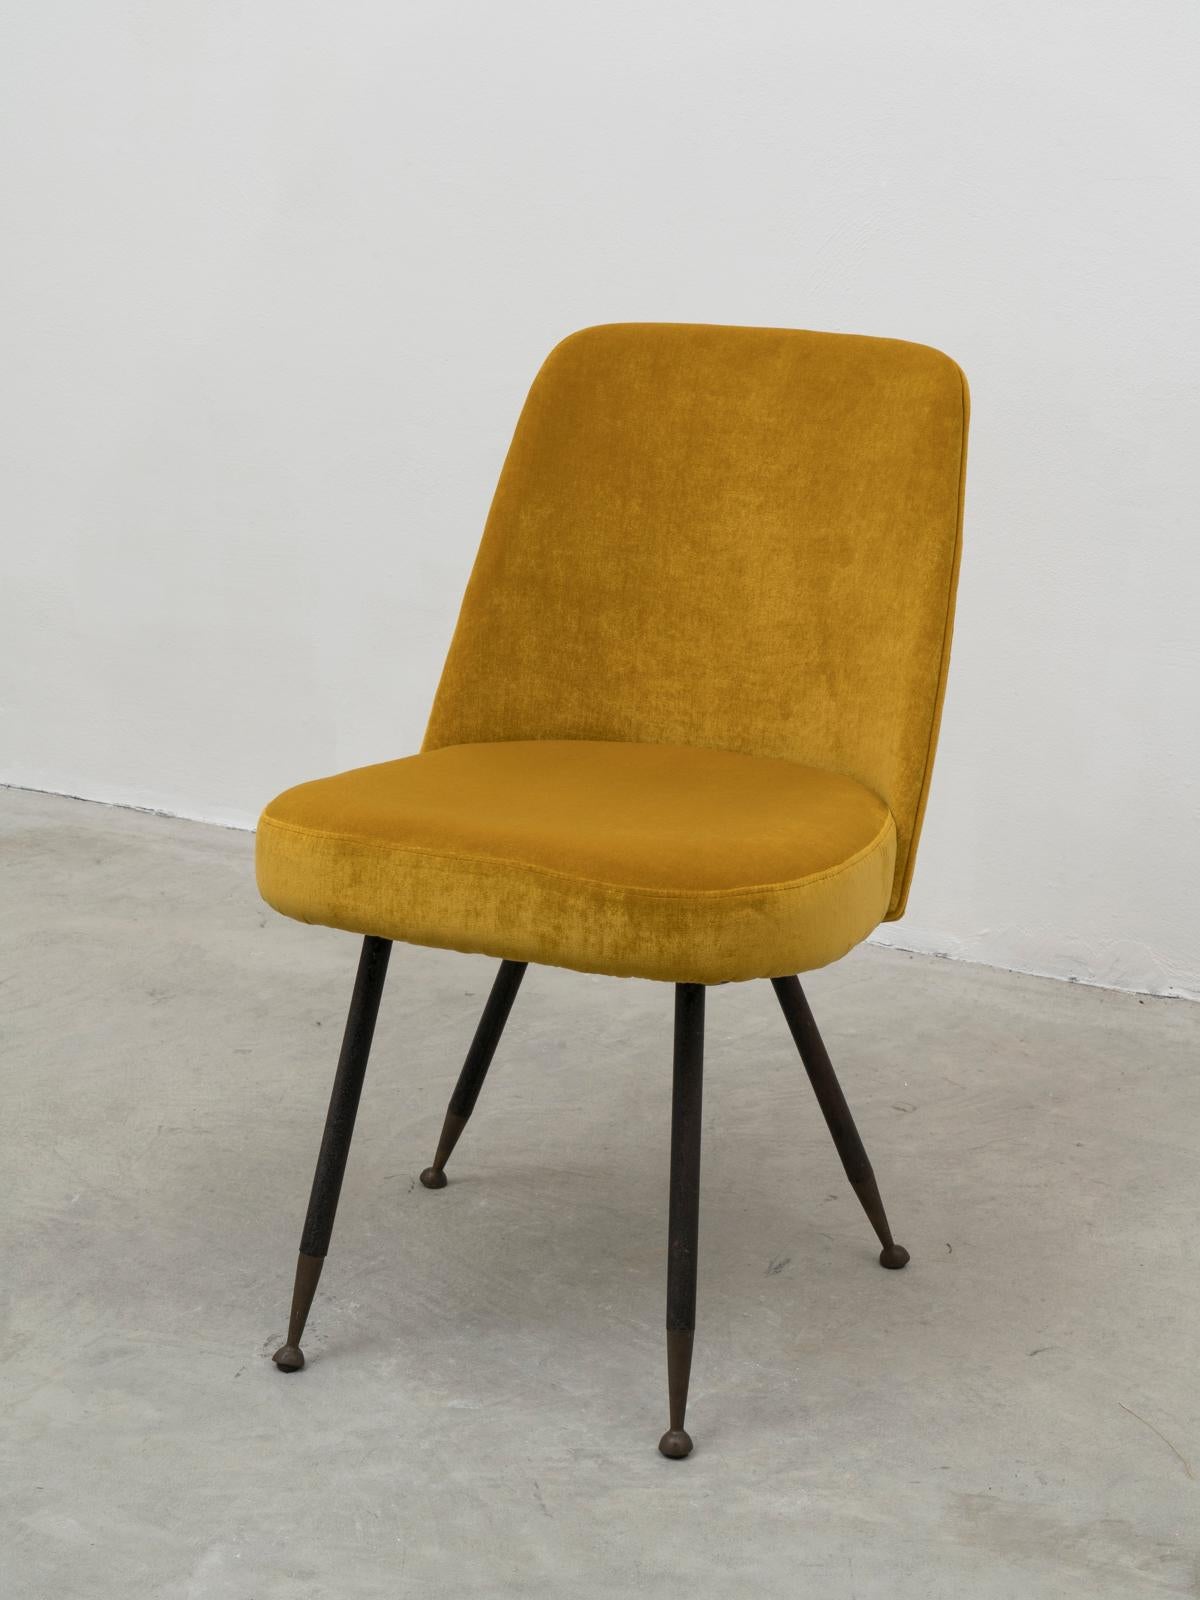 Italian Gastone Rinaldi Restored Mid-Century Velvet Desk Chair for RIMA, 1950s